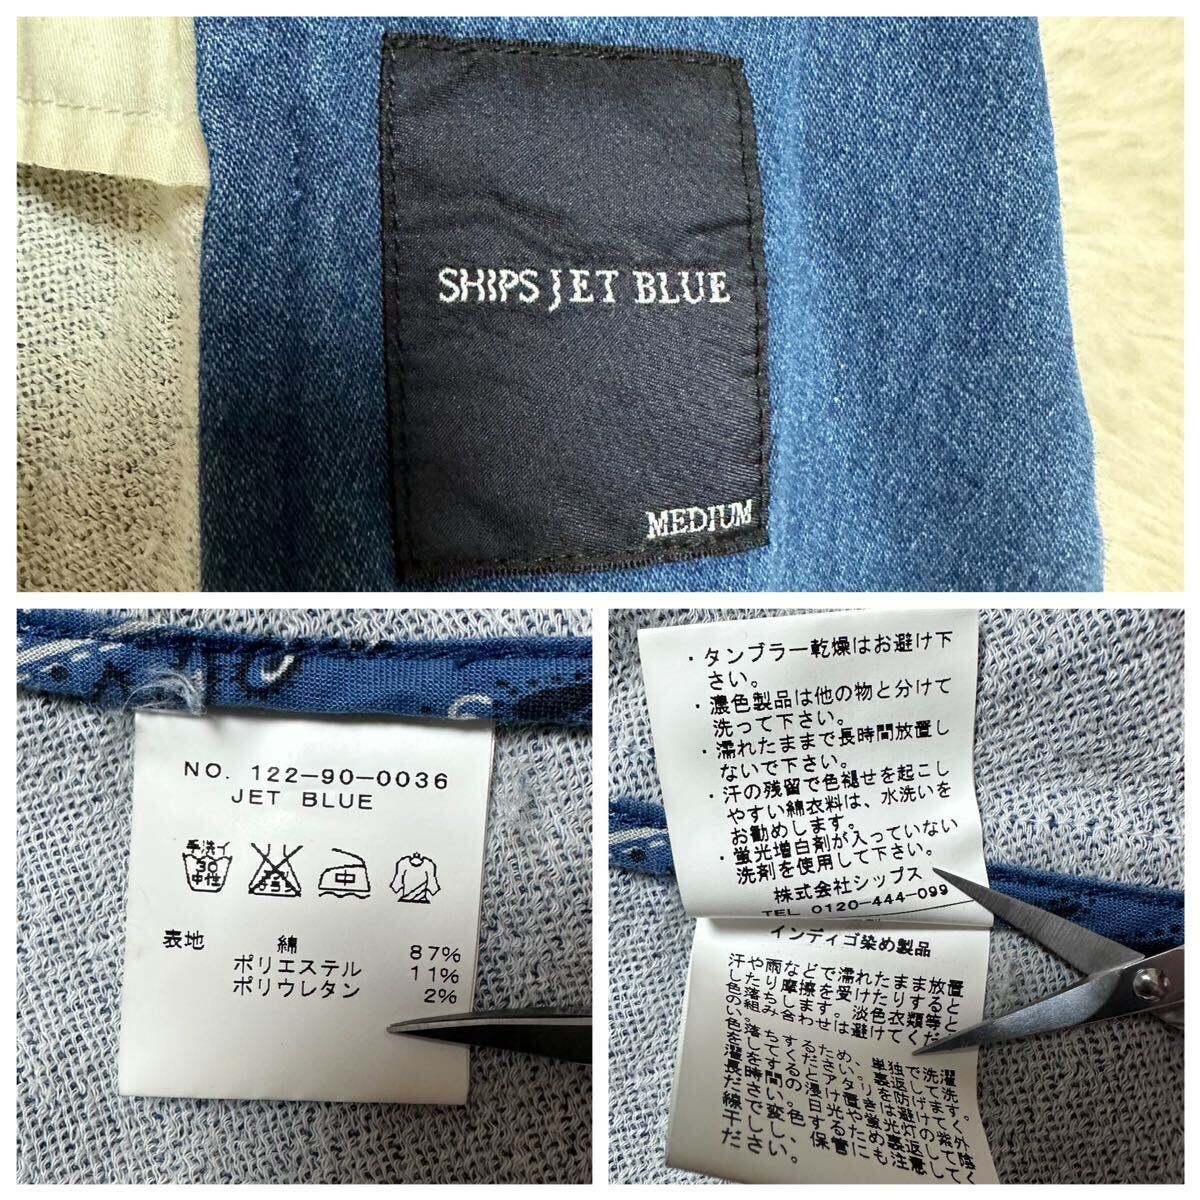 【美品】SHIPS JET BLUE シップス デニム テーラードジャケット アンコンジャケット 本切羽 インディゴブルー 藍染 M_画像10